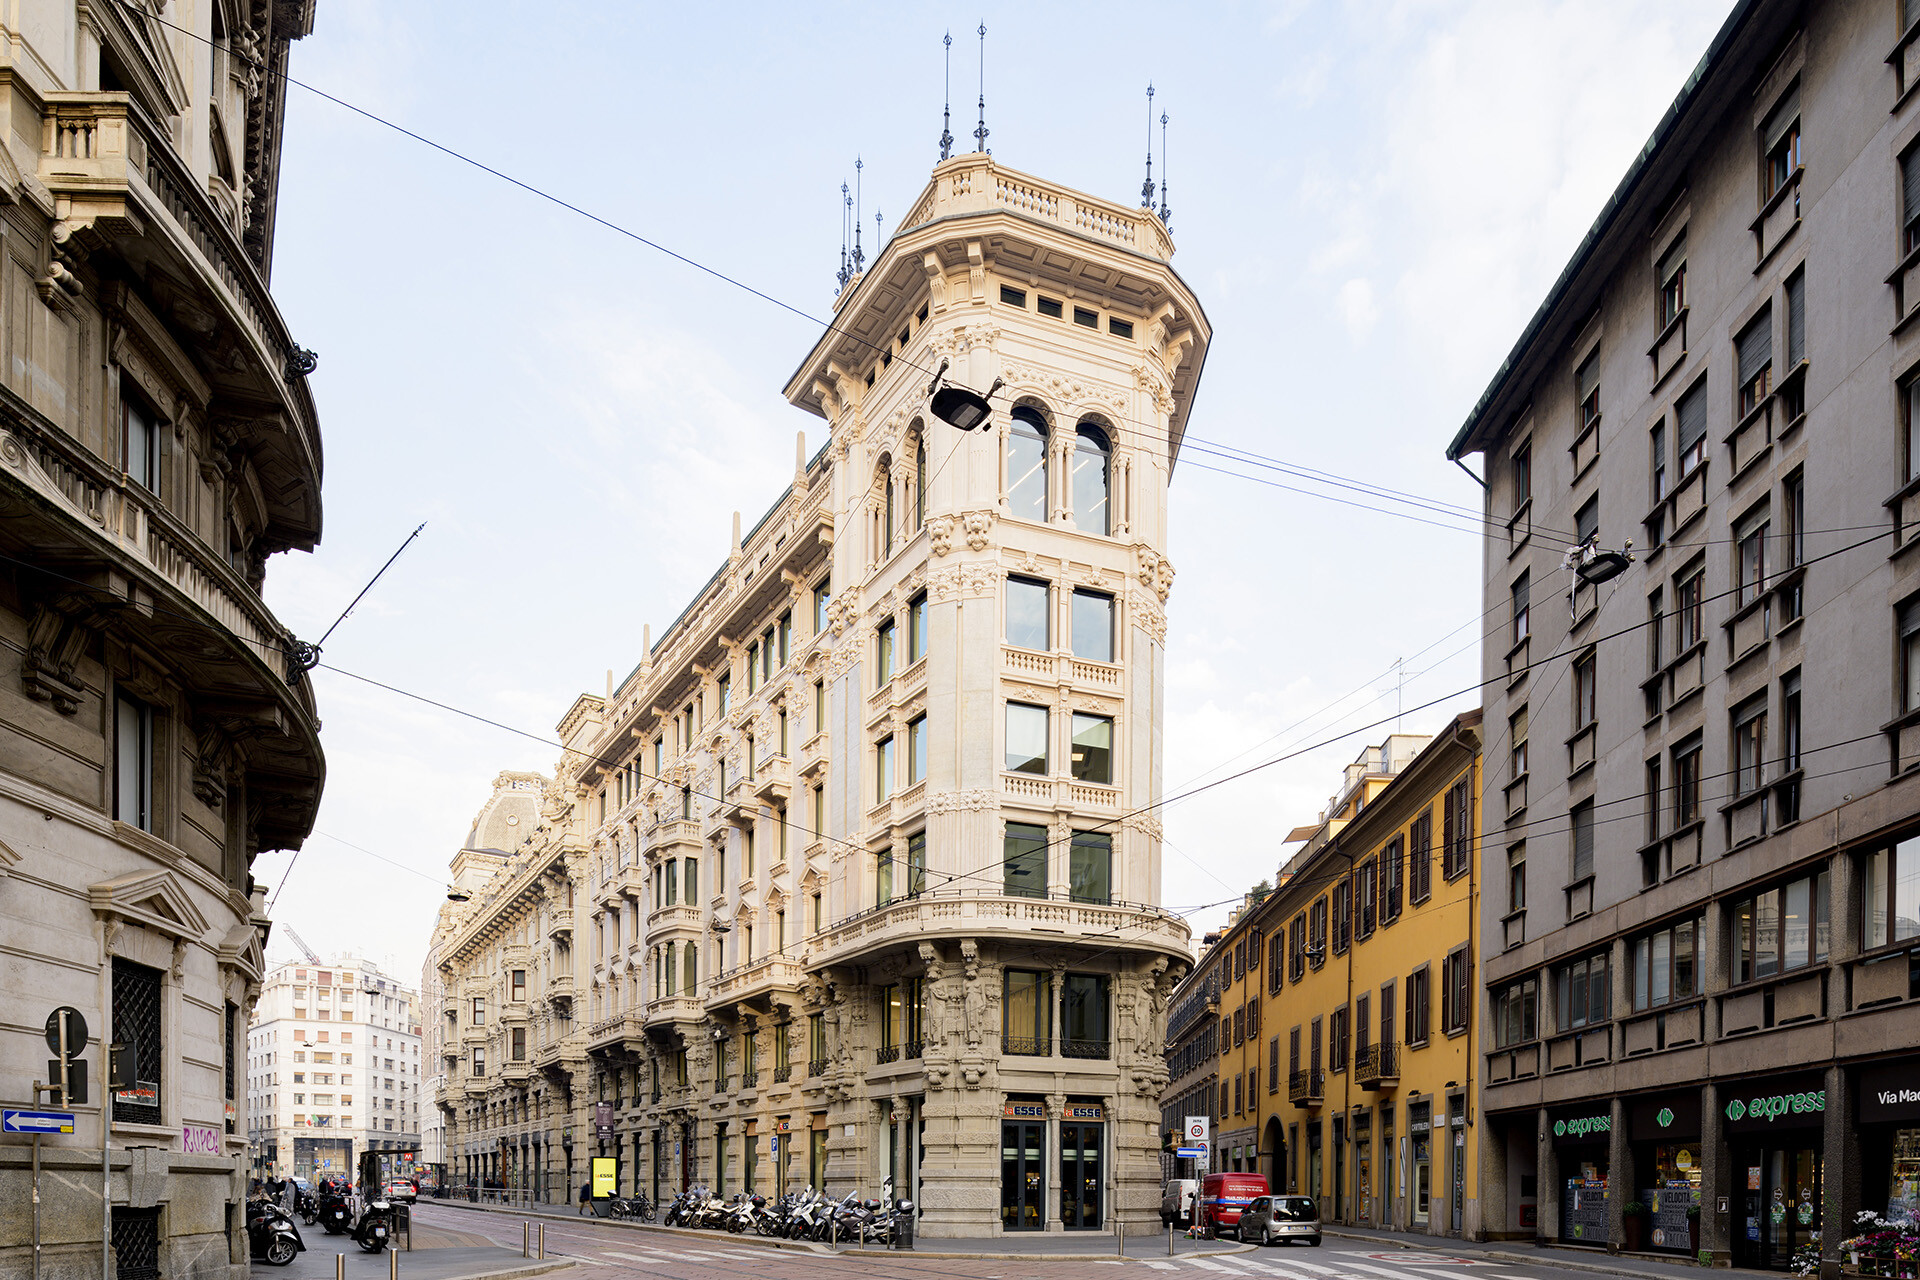 The Angle Palazzo Meroni Corso Italia